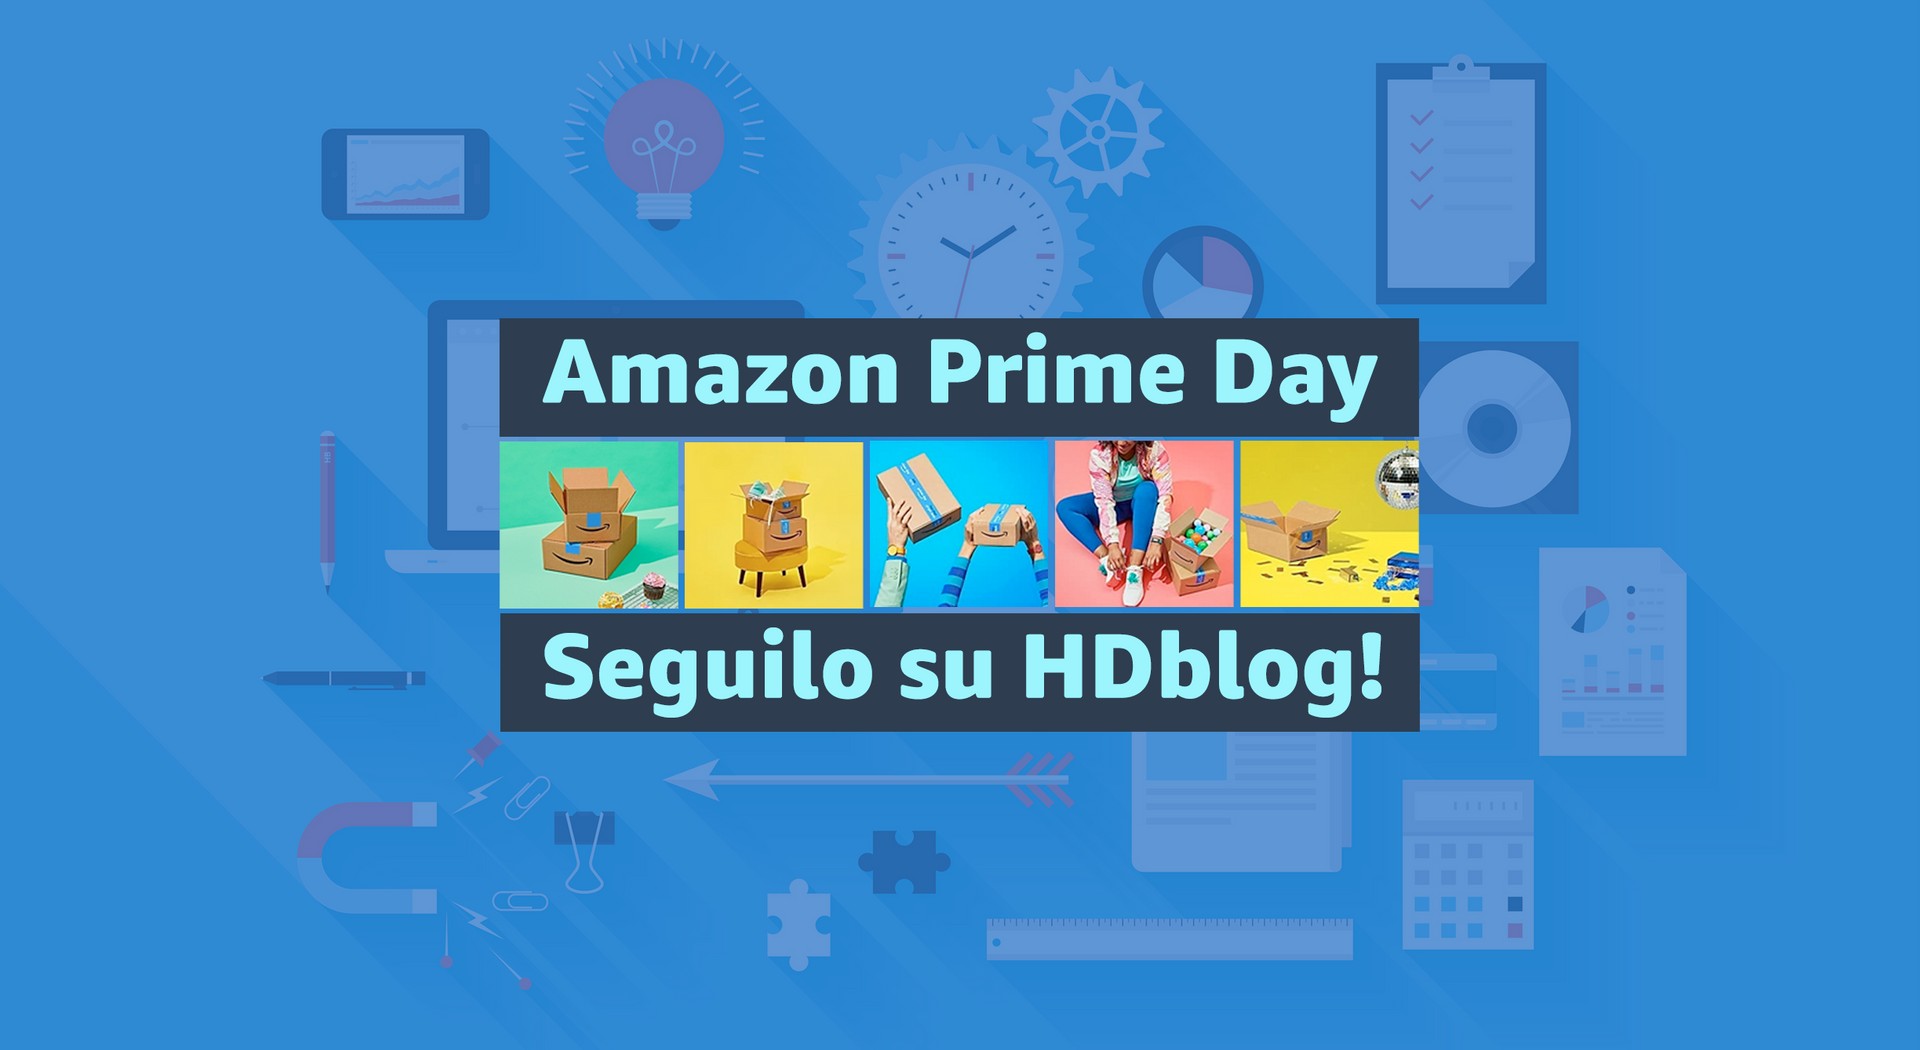 Amazon Prime Day 11 e 12 ottobre Live: tutte le offerte, sconti e promo in diretta